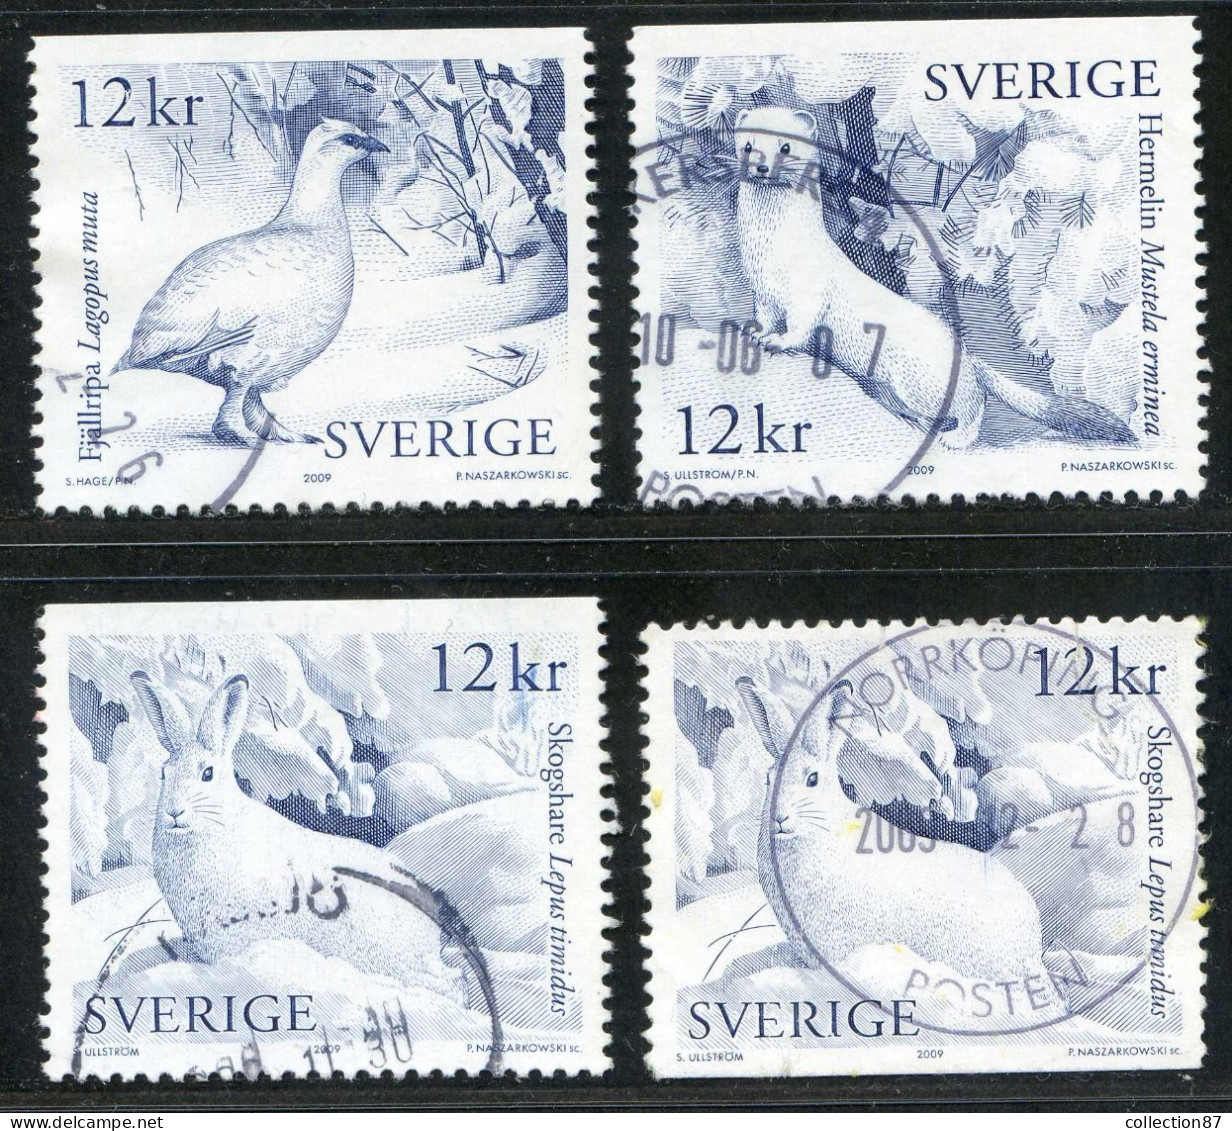 Réf 77 < SUEDE < Yvert N° 2712 à 2714 + 2714 Ø < Année 2009 Used SWEDEN < Animaux > Hermine Lièvre Lagopède - Usados